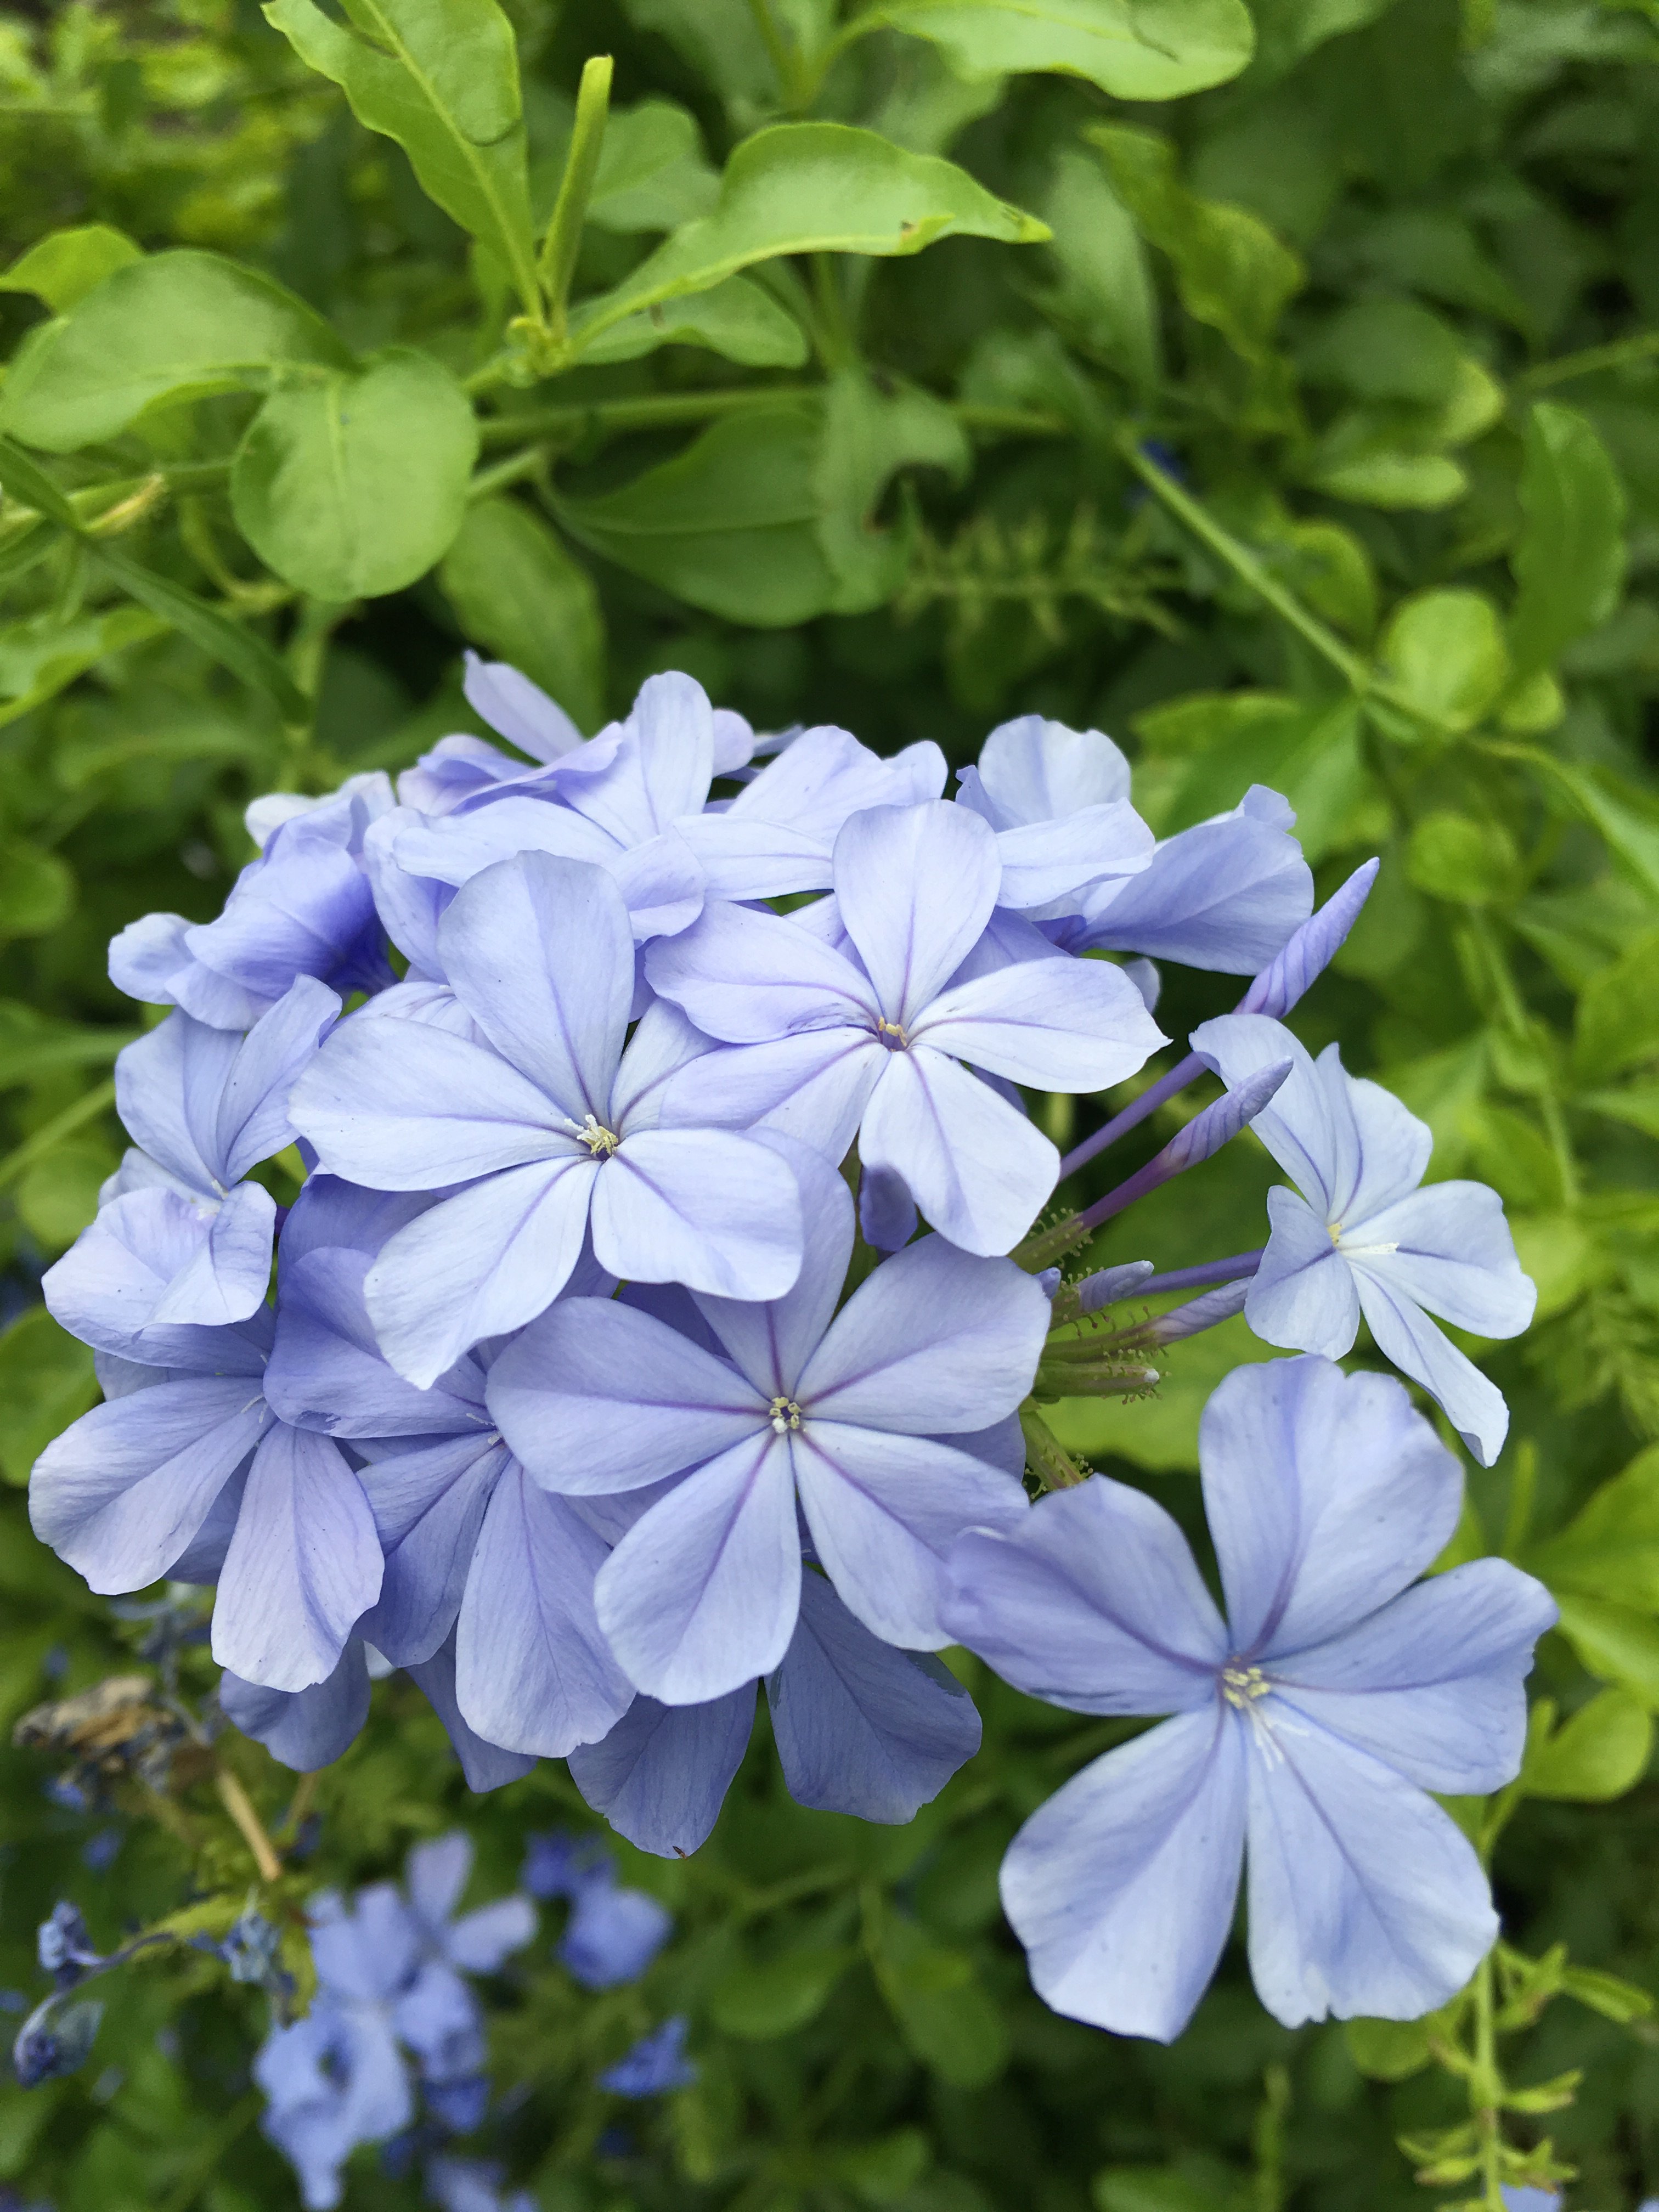 Crystal Art Box プルンバーゴ ルリマツリ 瑠璃色に魅せられて 青藤色の花が風に揺れるさまは涼しげです 南アフリカ原産ですが 熱帯の花とは思えないほど優美で繊細 初夏から秋にかけて 細くしなる茎の先に涼しげなフロックスに 似た花を穂状に